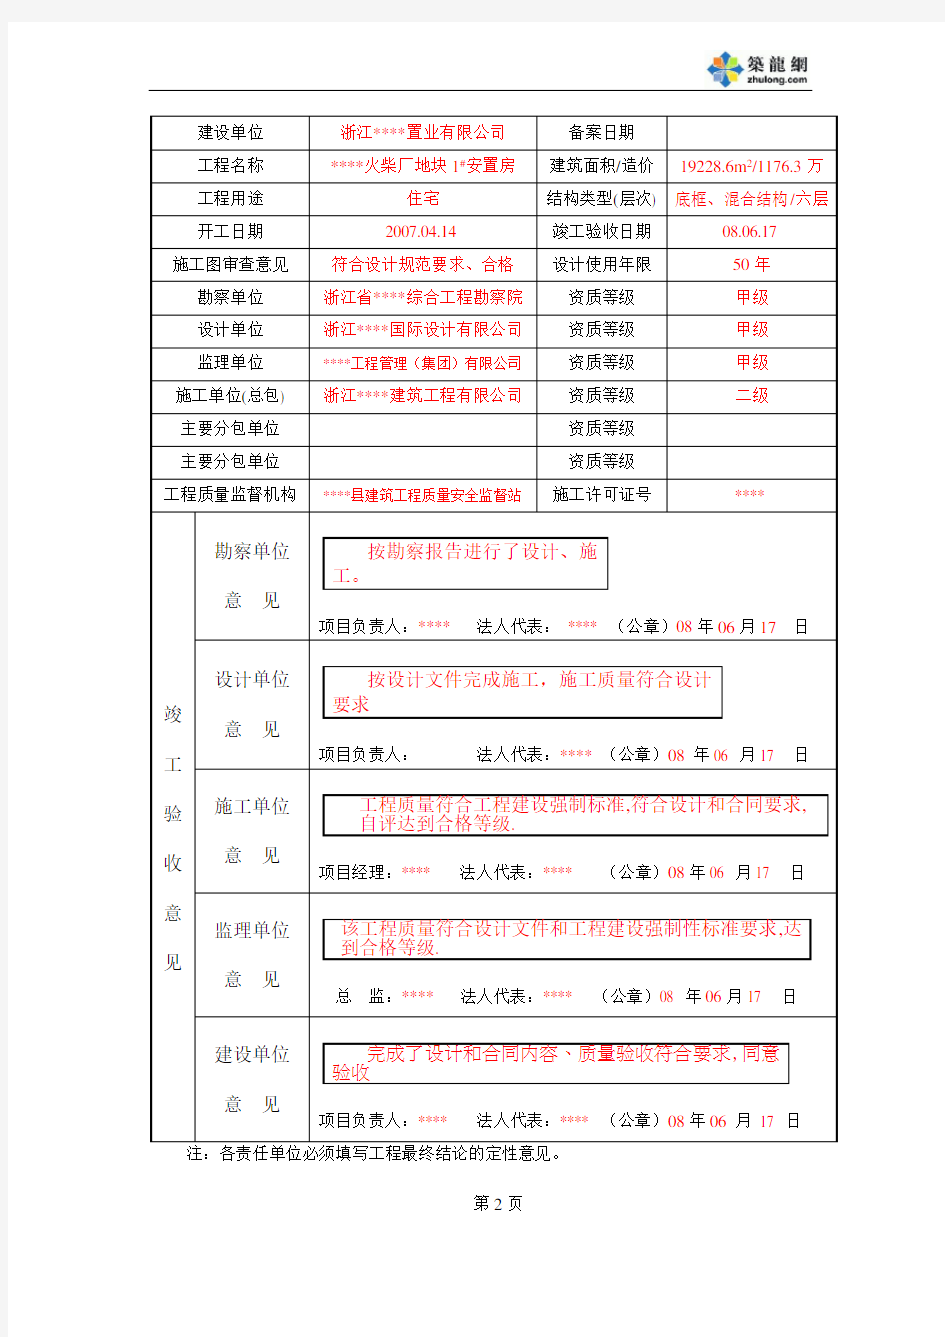 【浙江】房屋建筑工程竣工验收备案表(填写实例)